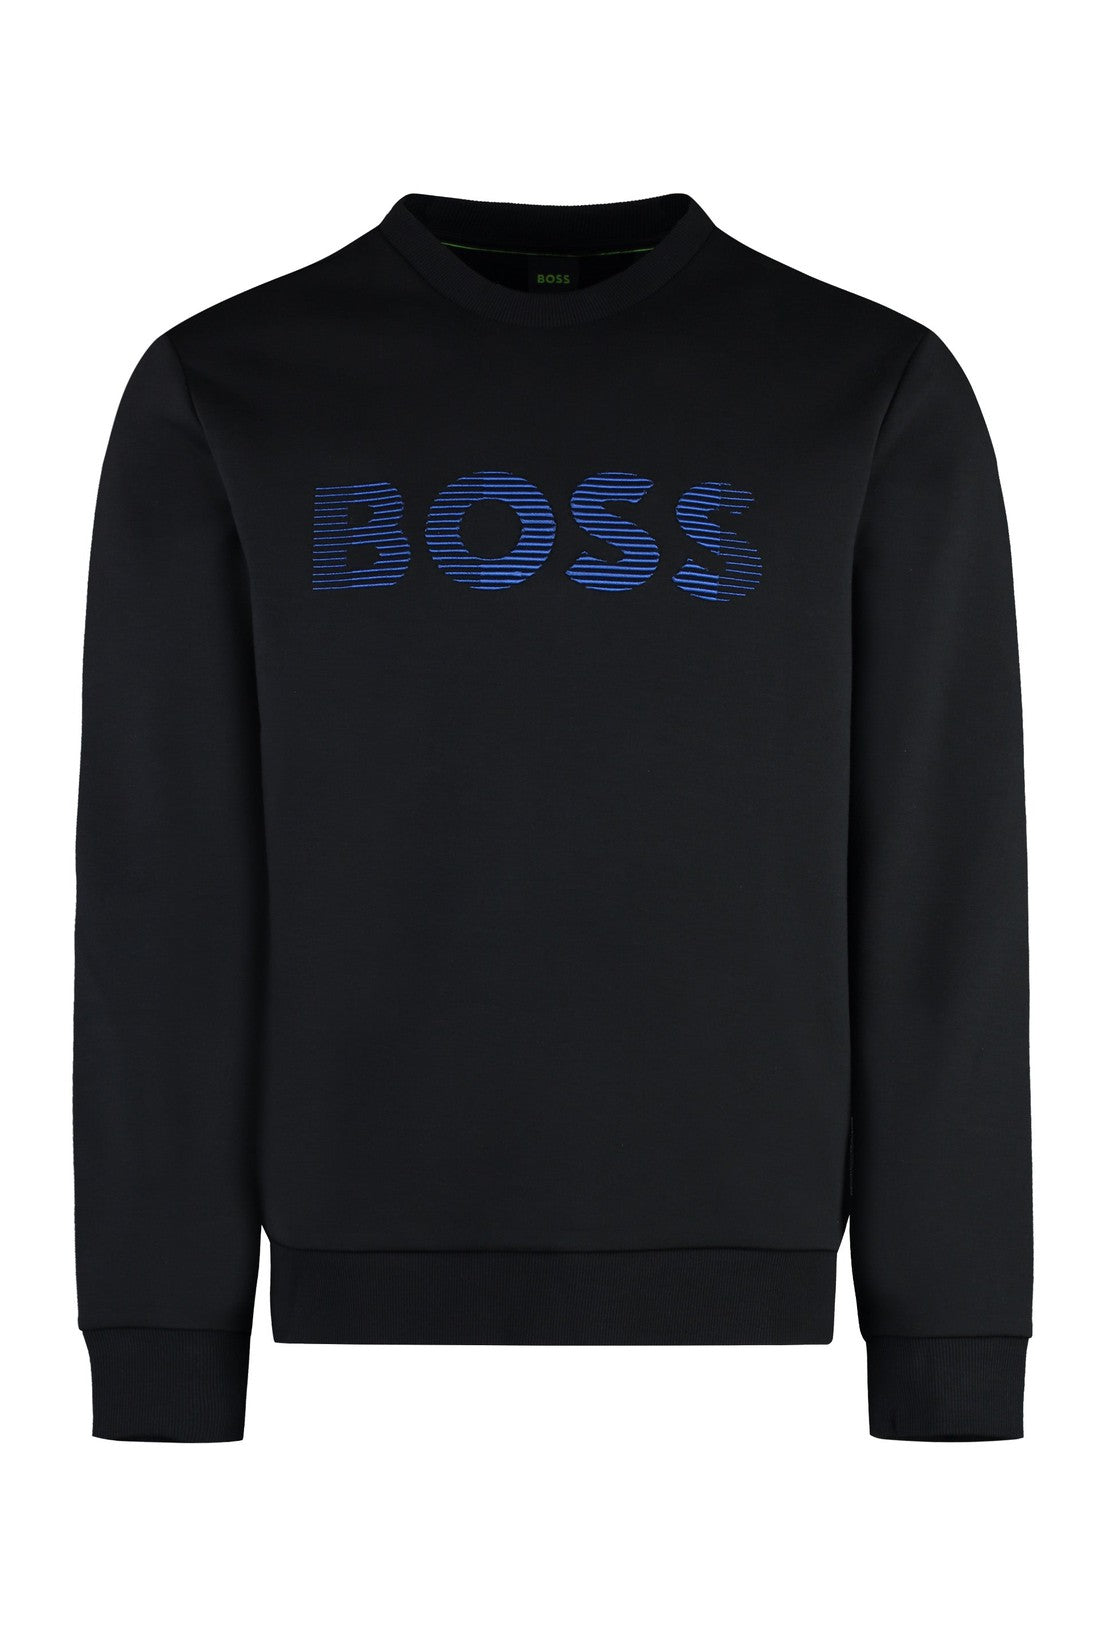 BOSS-OUTLET-SALE-Cotton crew-neck sweatshirt-ARCHIVIST